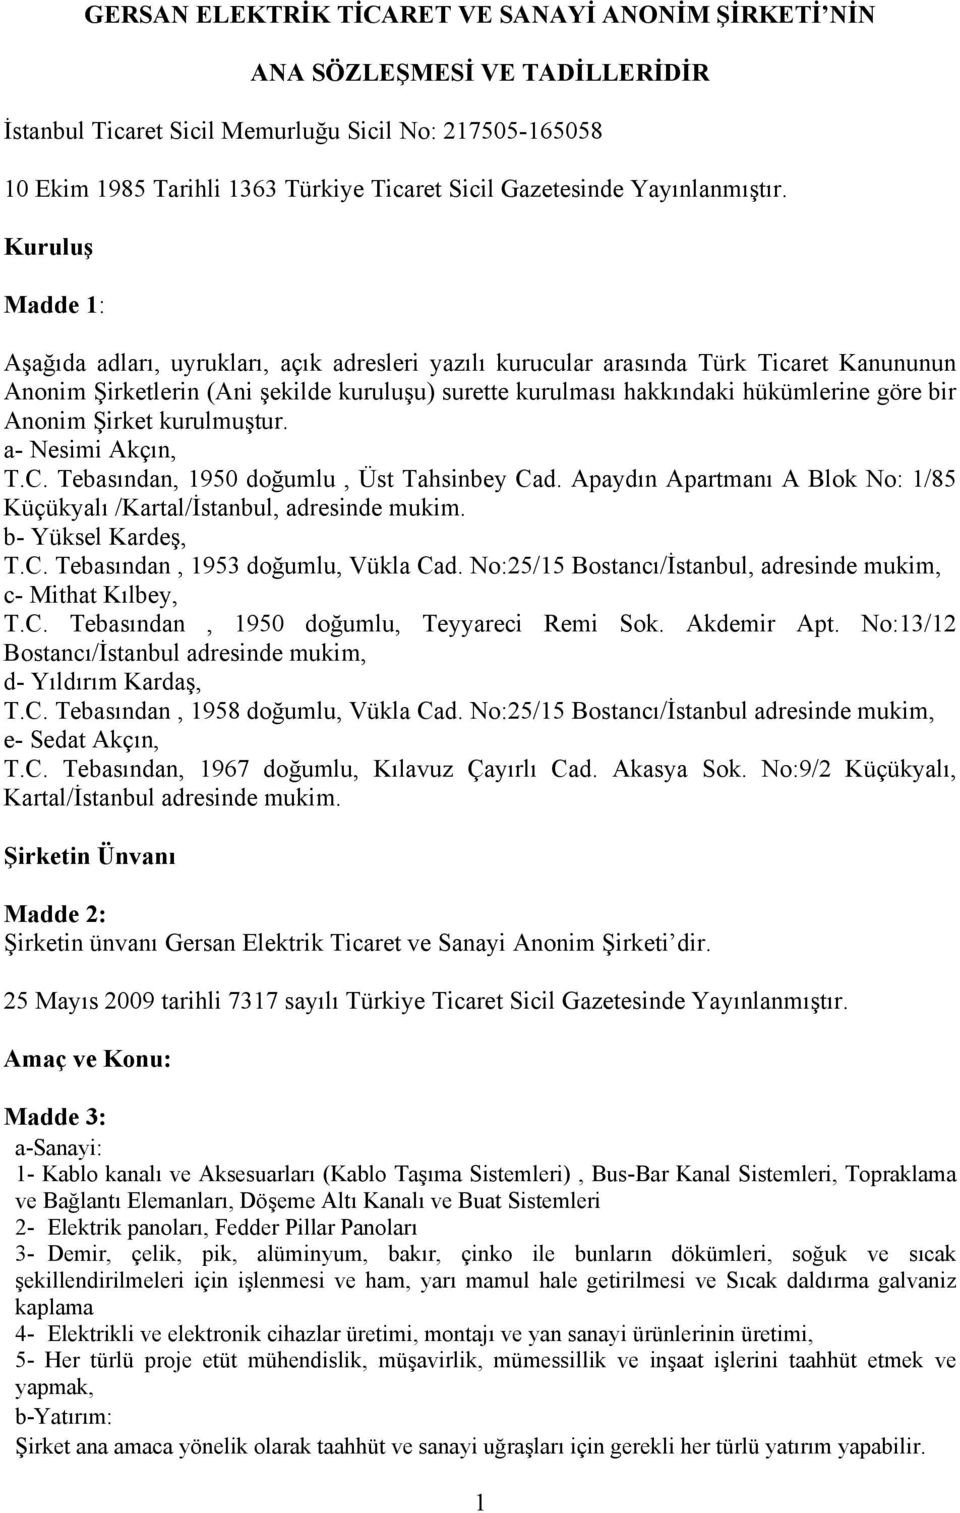 Kuruluş Madde 1: Aşağıda adları, uyrukları, açık adresleri yazılı kurucular arasında Türk Ticaret Kanununun Anonim Şirketlerin (Ani şekilde kuruluşu) surette kurulması hakkındaki hükümlerine göre bir